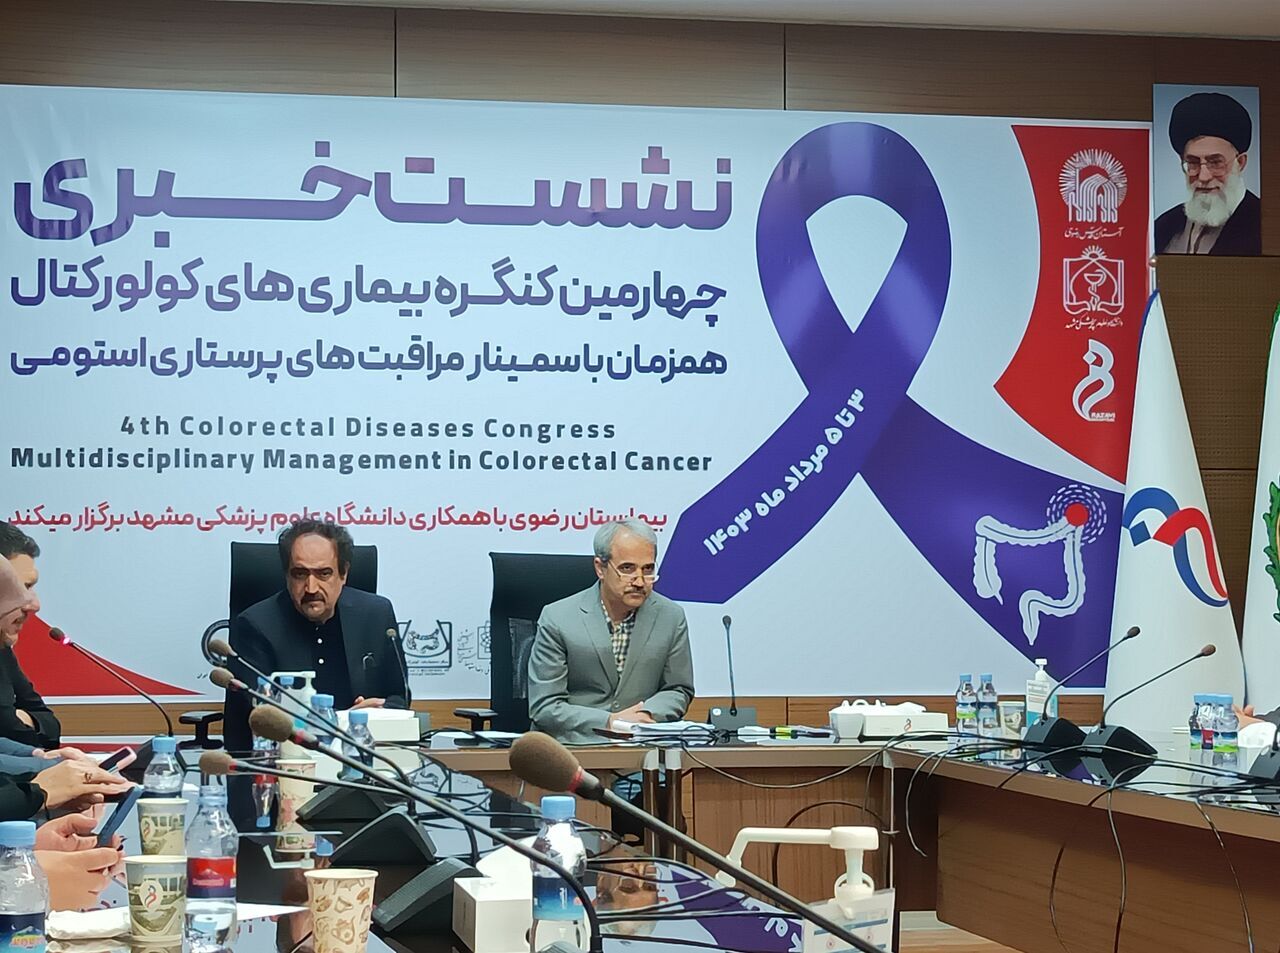 برگزاری چهارمین کنگره بیماری های کولورکتال  (روده بزرگ) در مشهد